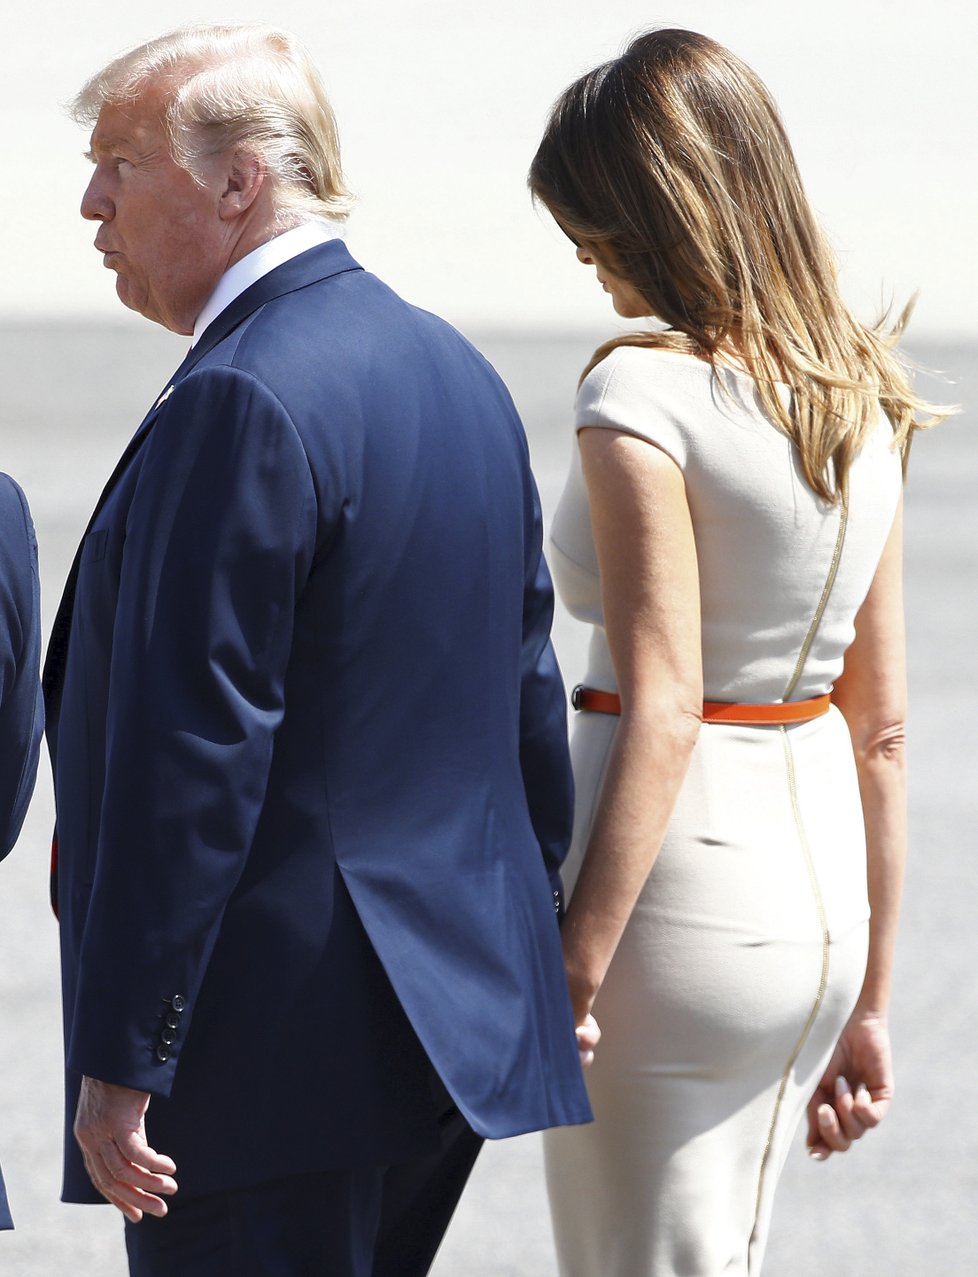 Prezident Trump s manželkou Melanií dorazil do Británie.